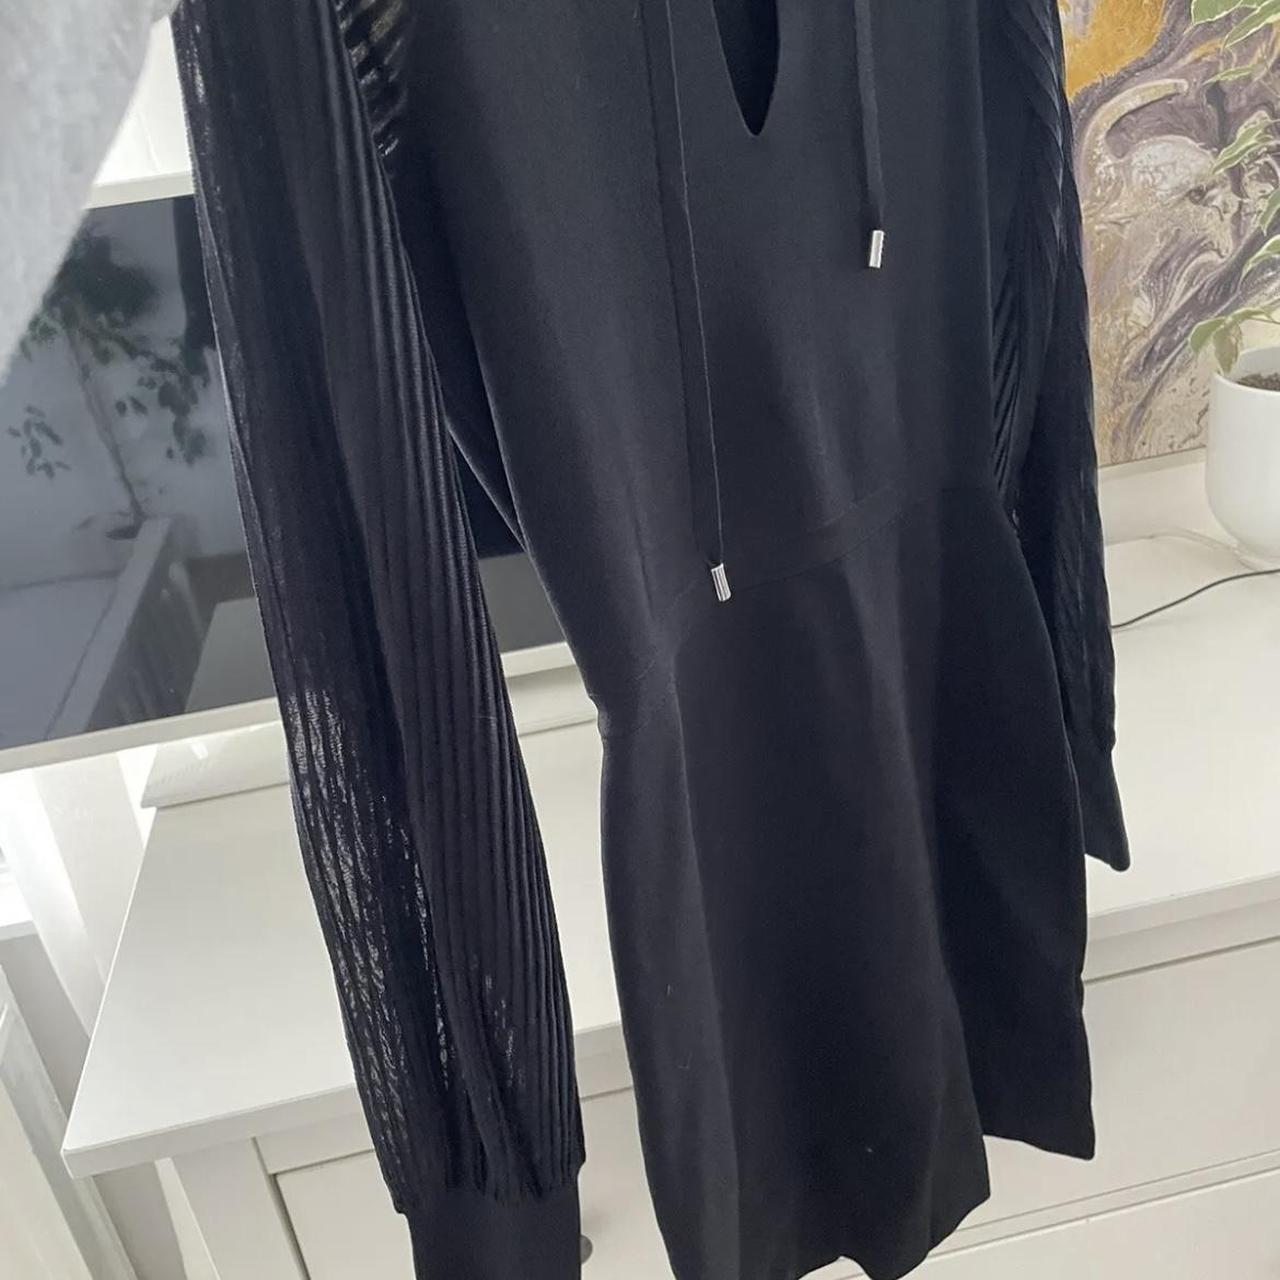 Reiss Black Celeste Sheer Sleeve Knitted Dress Size... - Depop